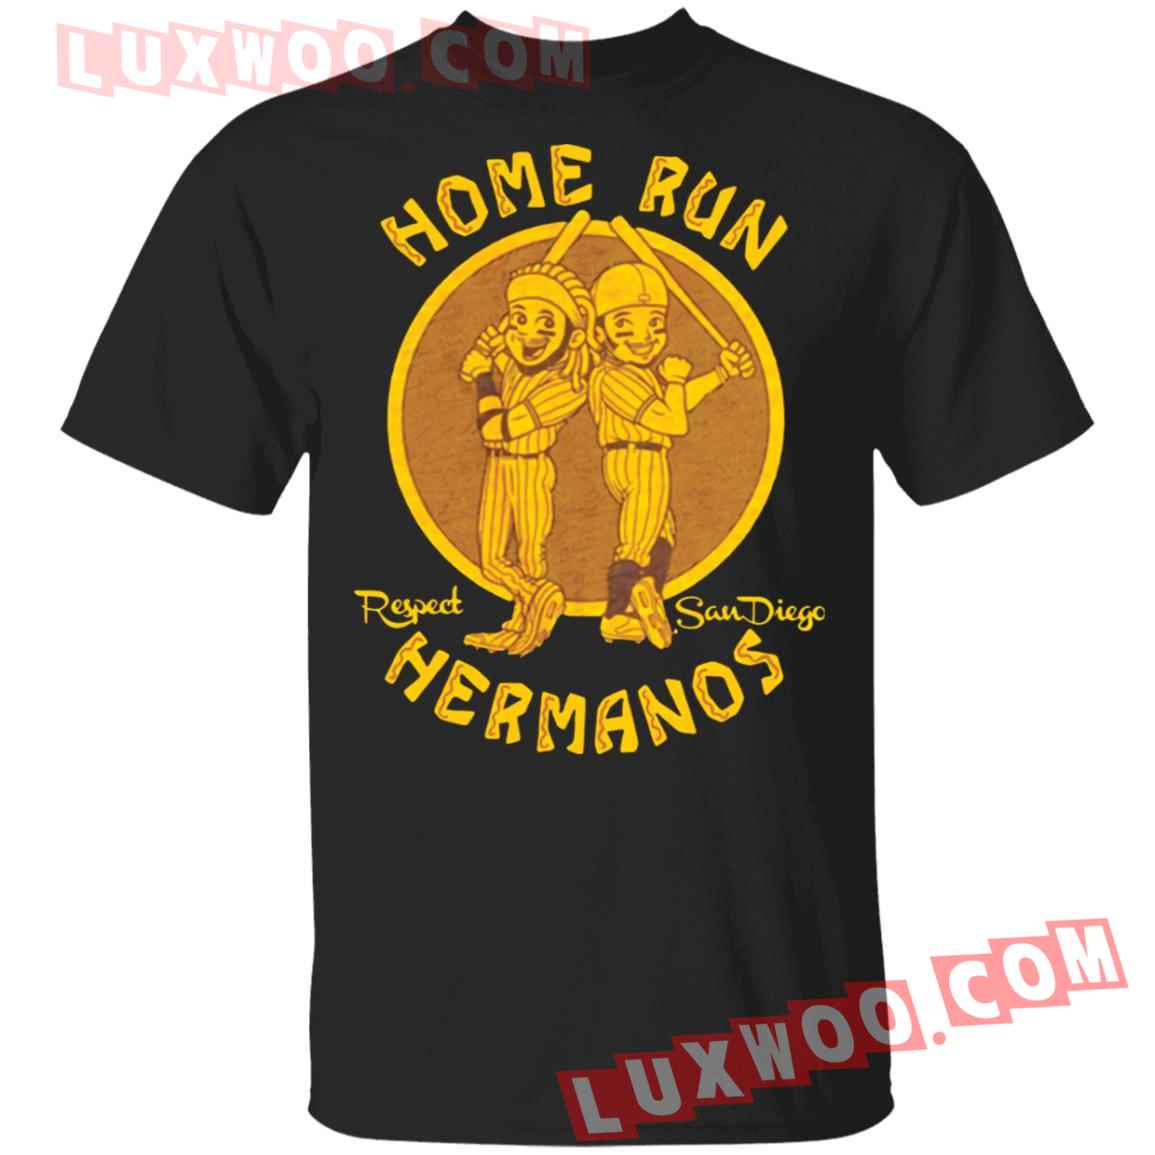 Home Run Hermanos Shirt